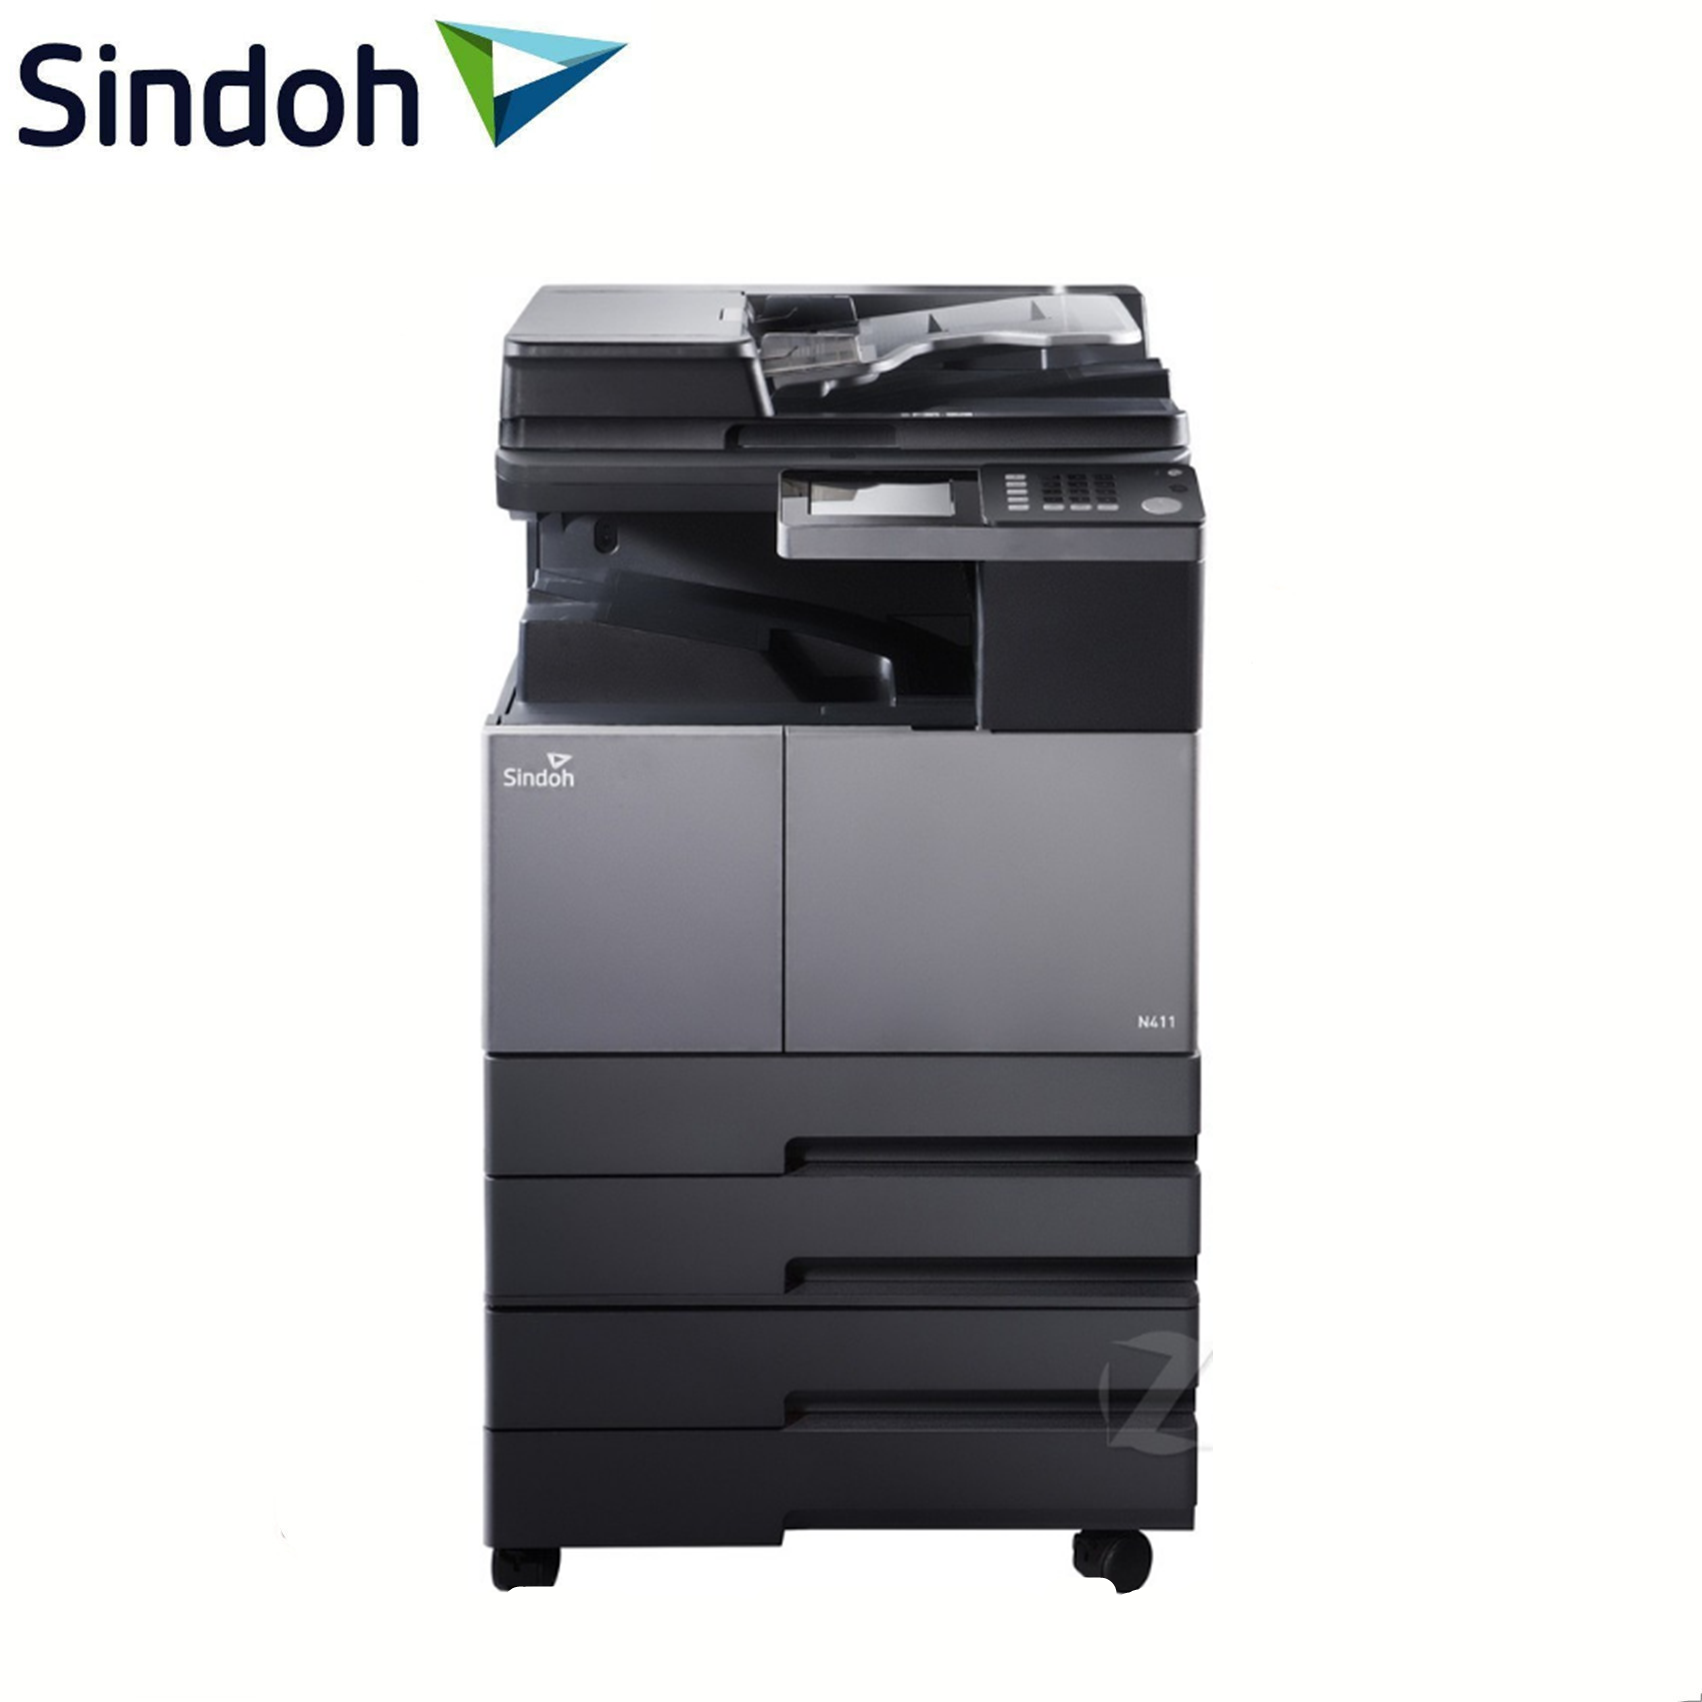 新都(SINDOH)N411 黑白数码复印机 打印/复印/扫描 标配双面器 支持网络打印